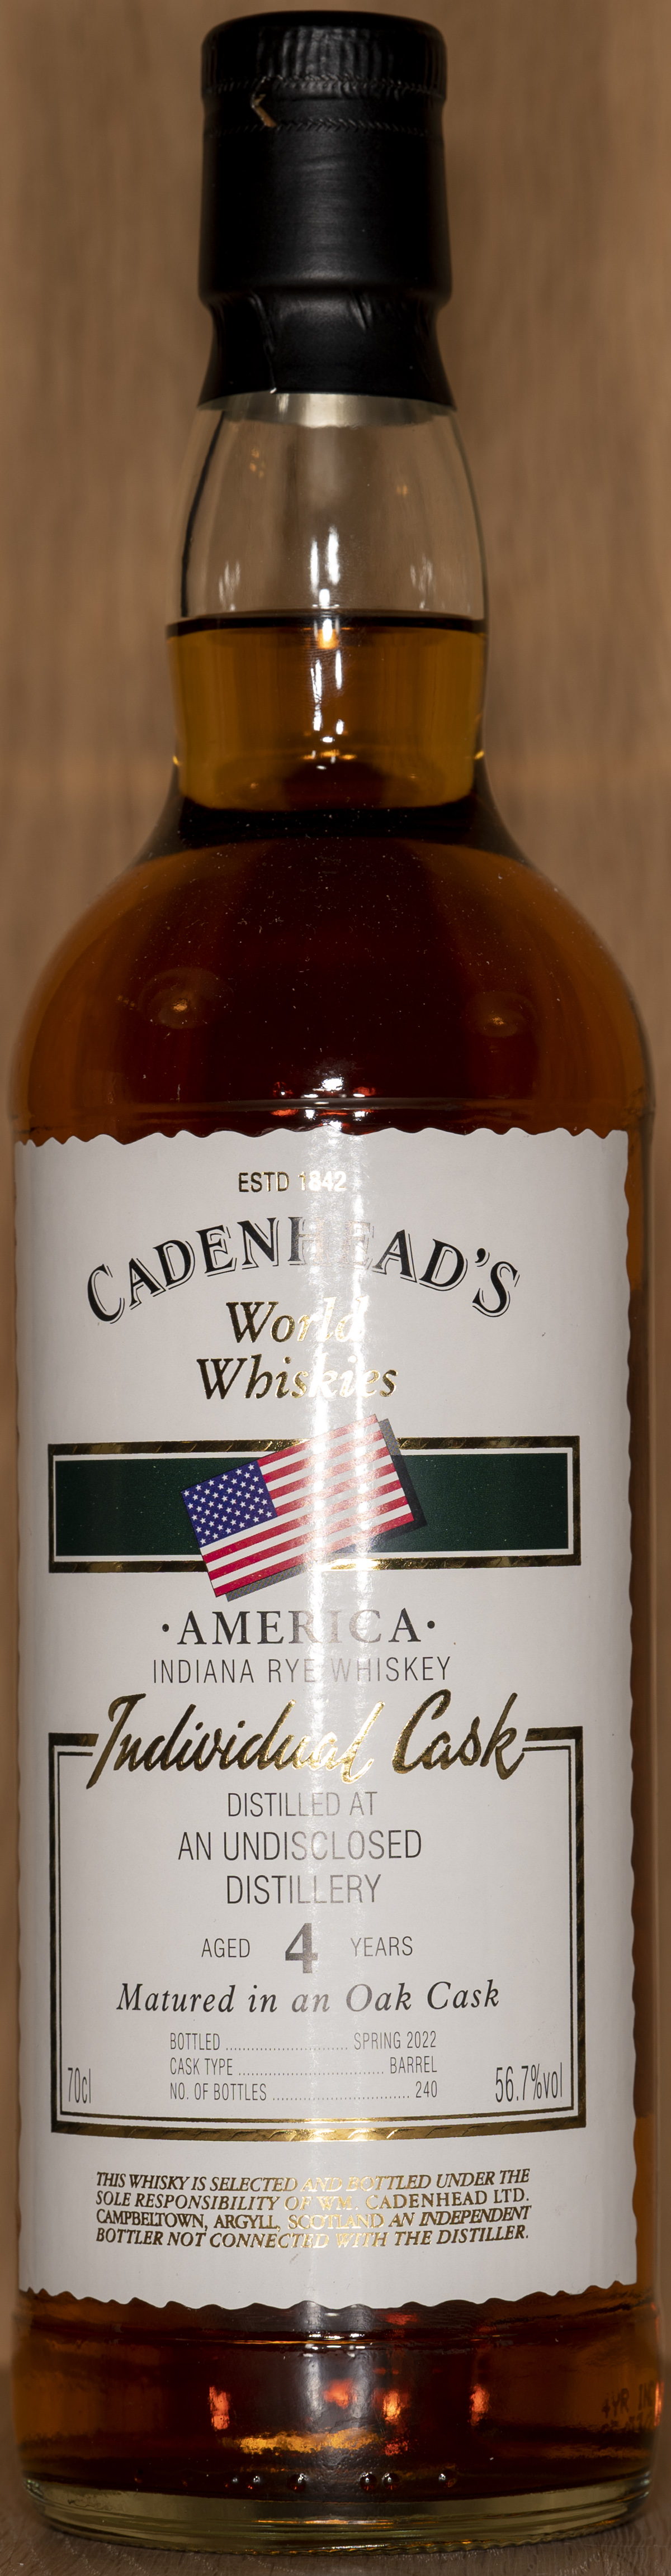 Billede: DSC_5039 - Cadenheads World Whiskies Indiana Rye 4 - bottle front.jpg